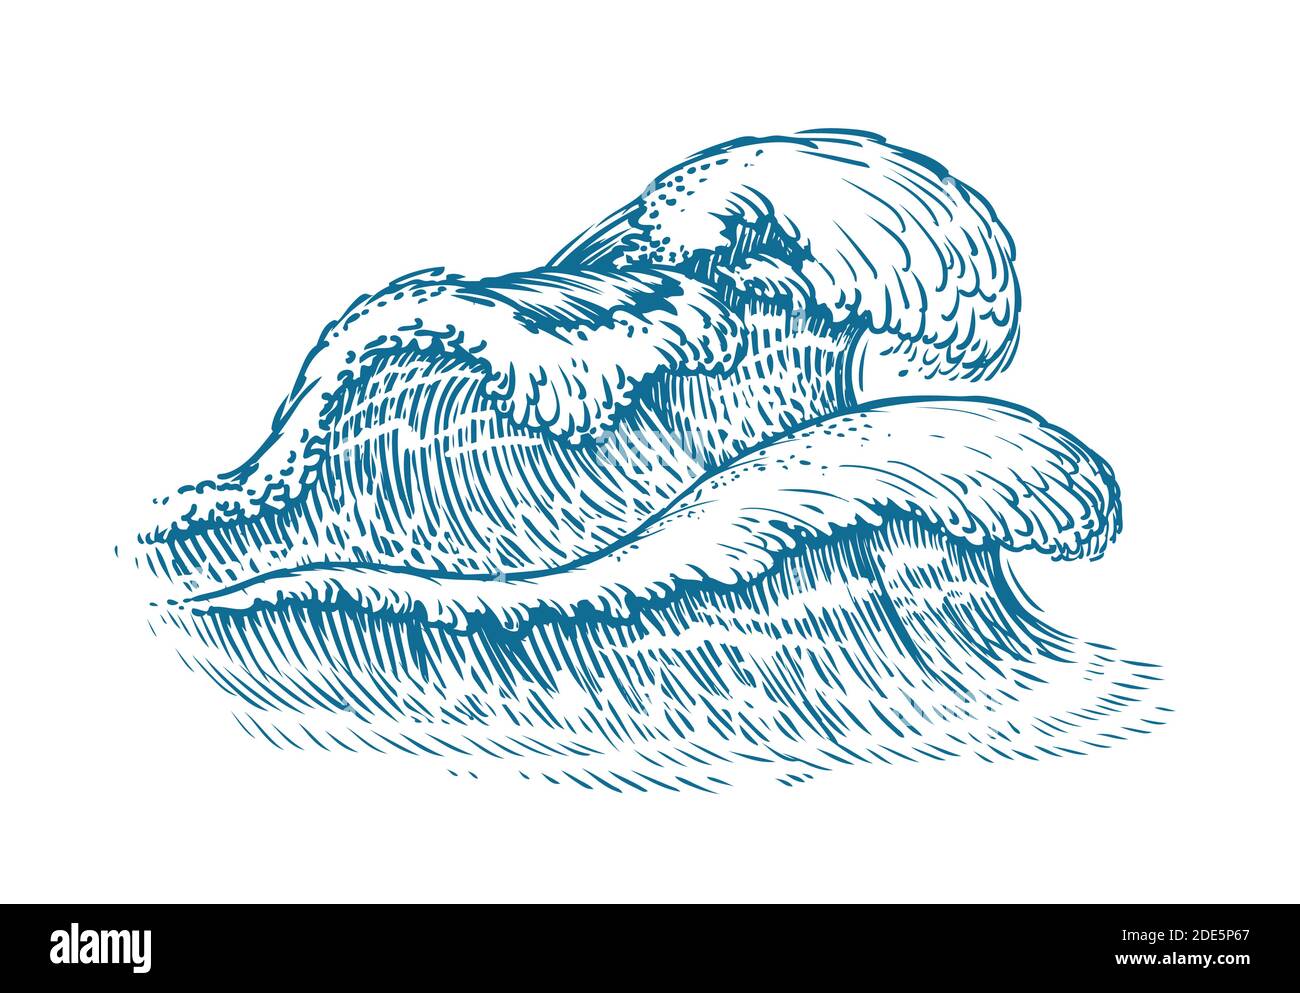 Waves sketch. Seascape vintage vector illustration Stock Vector